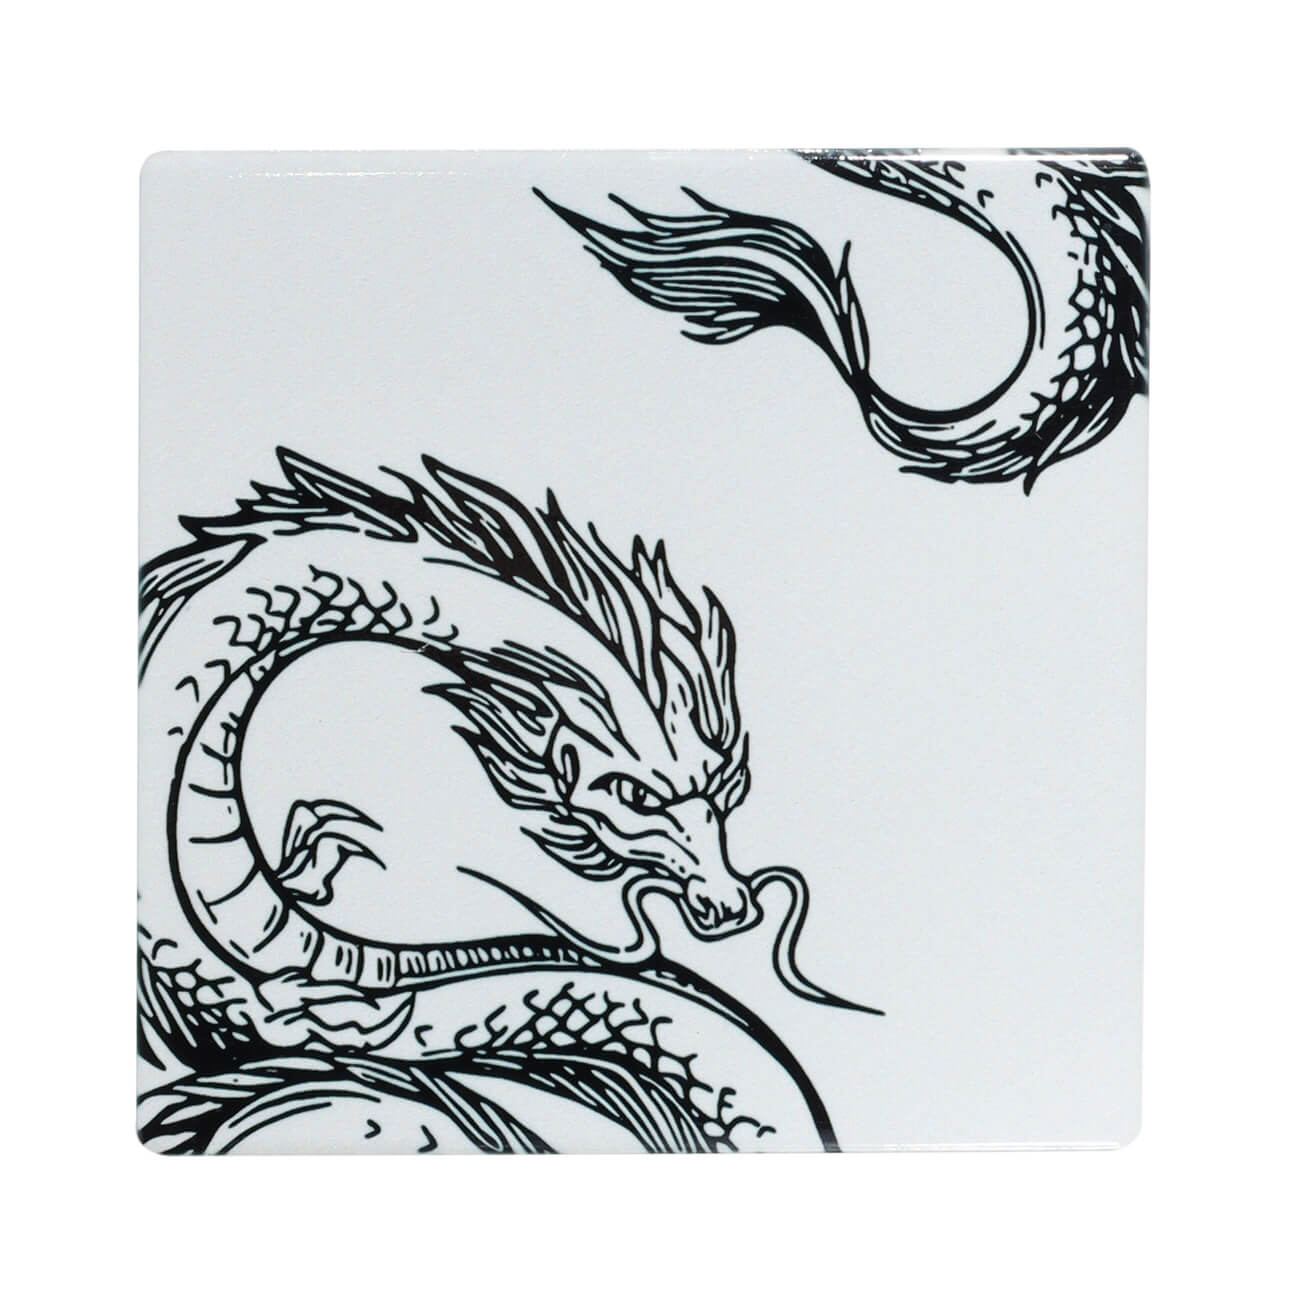 Подставка под кружку, 11х11 см, керамика/пробка, квадратная, молочная, Дракон, Dragon dayron изображение № 1